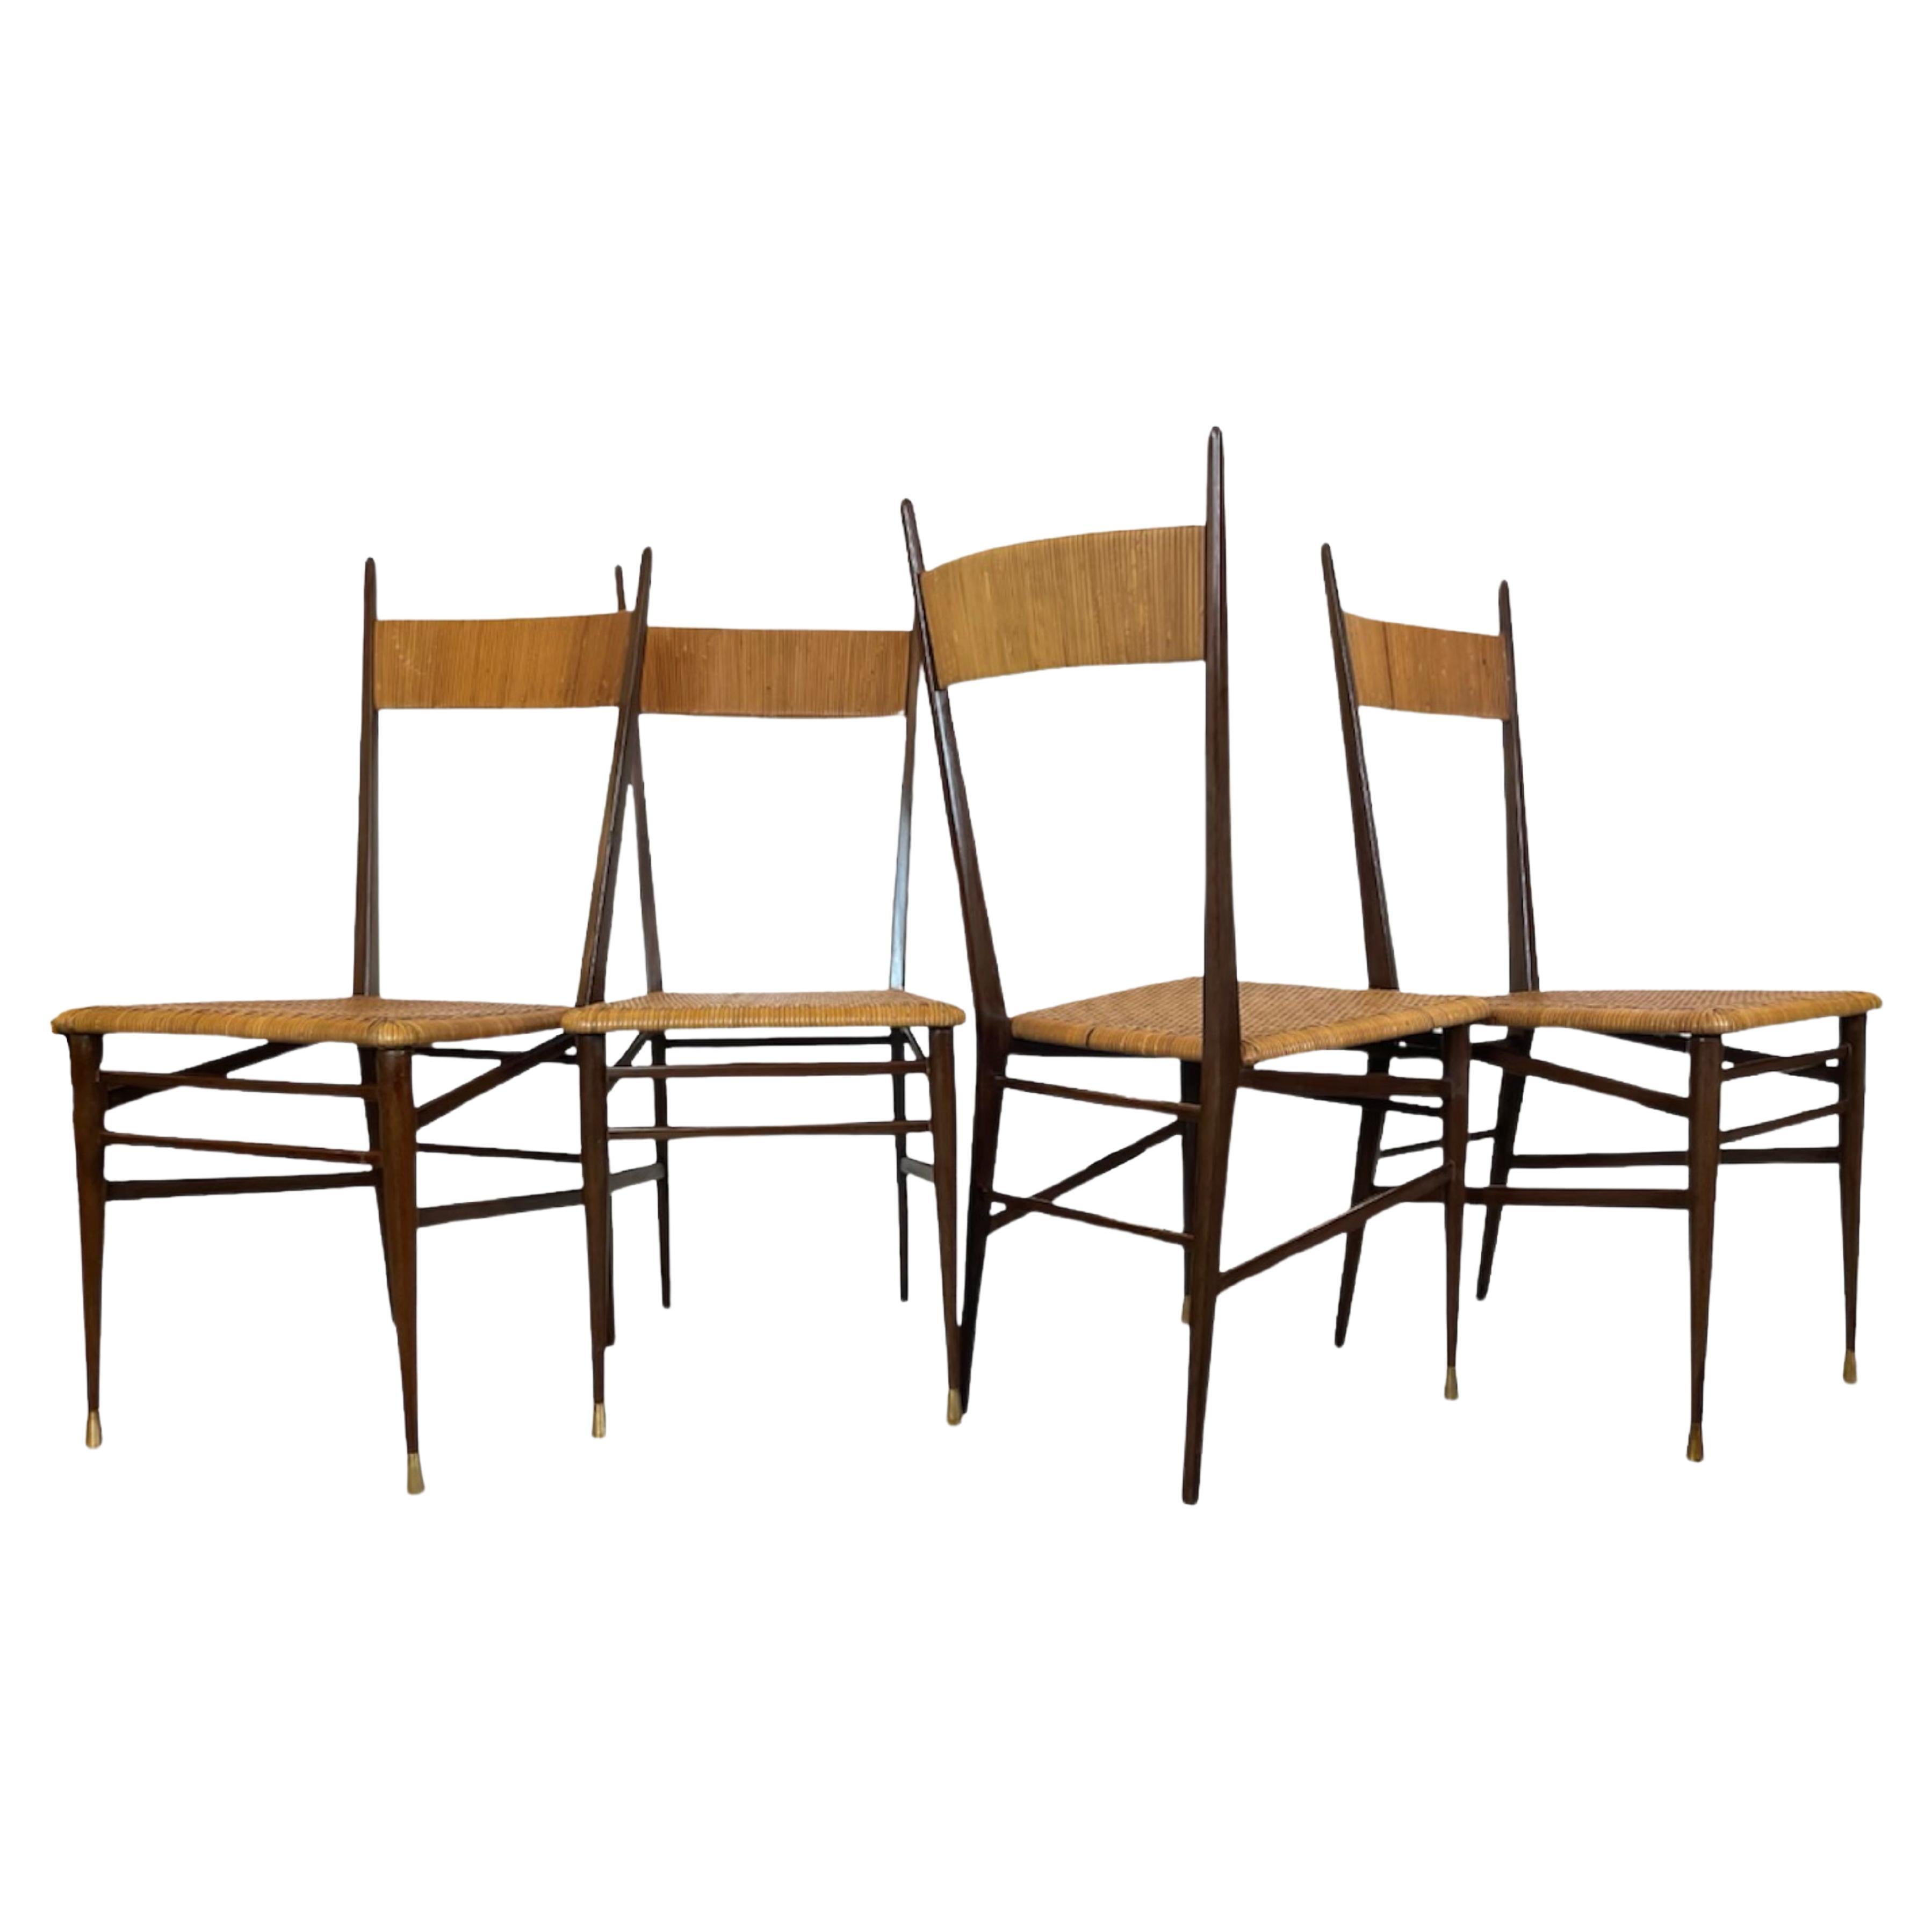 Ensemble de quatre chaises design italiennes, Scuola di Torino, vers les années 1950.
4 Chiavari traditionnels italiens, à la manière de Gio Ponti et de Superleggera.
Structure en bois massif, assise et dossier en rotin tressé. 
Chaque jeu de 2